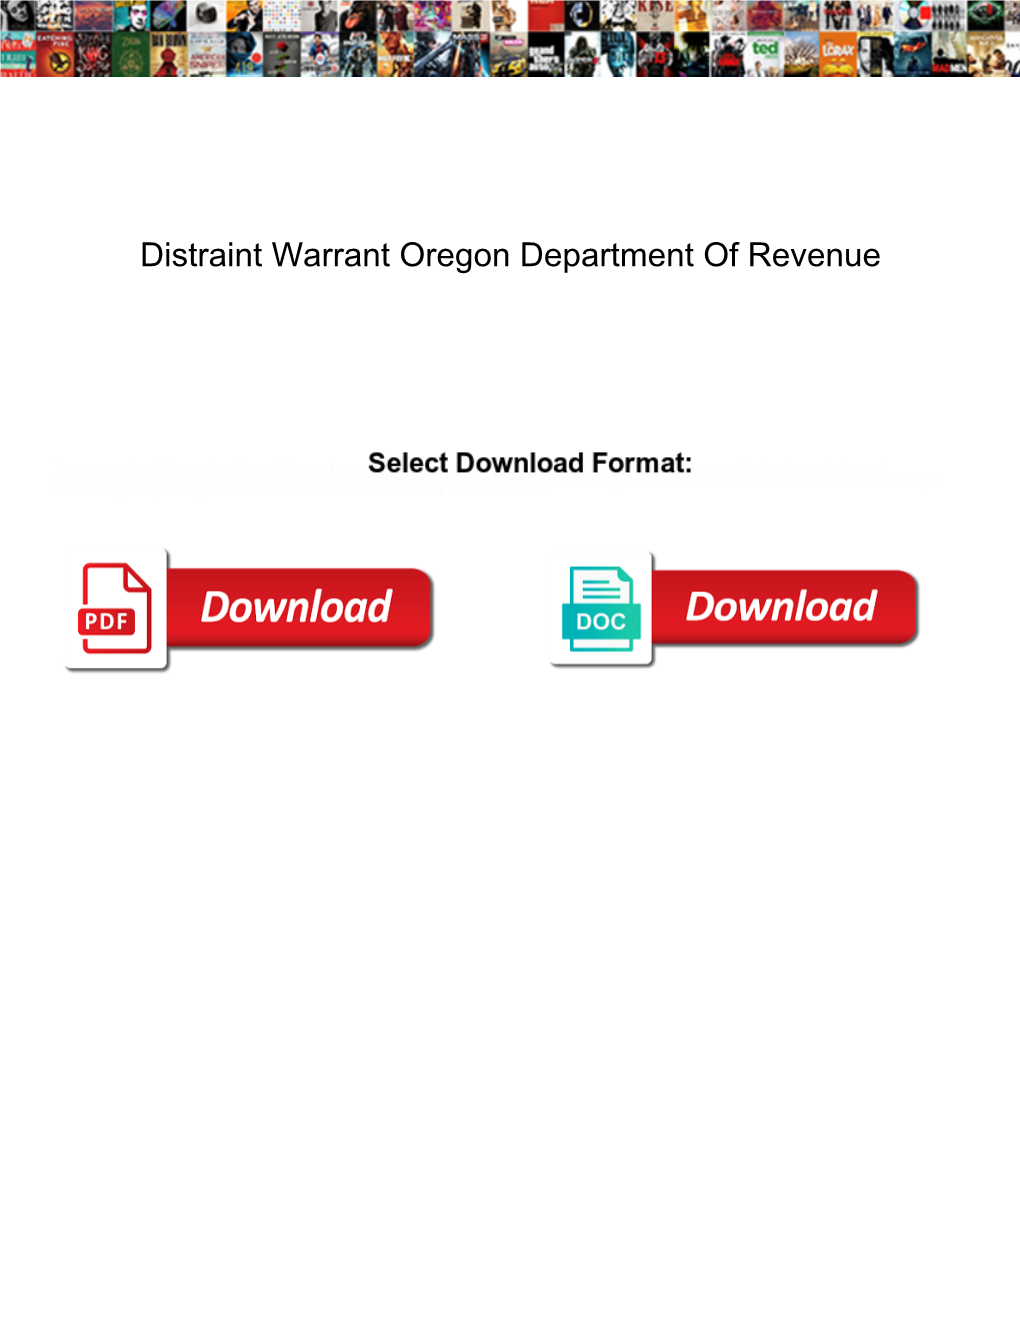 Distraint Warrant Oregon Department of Revenue